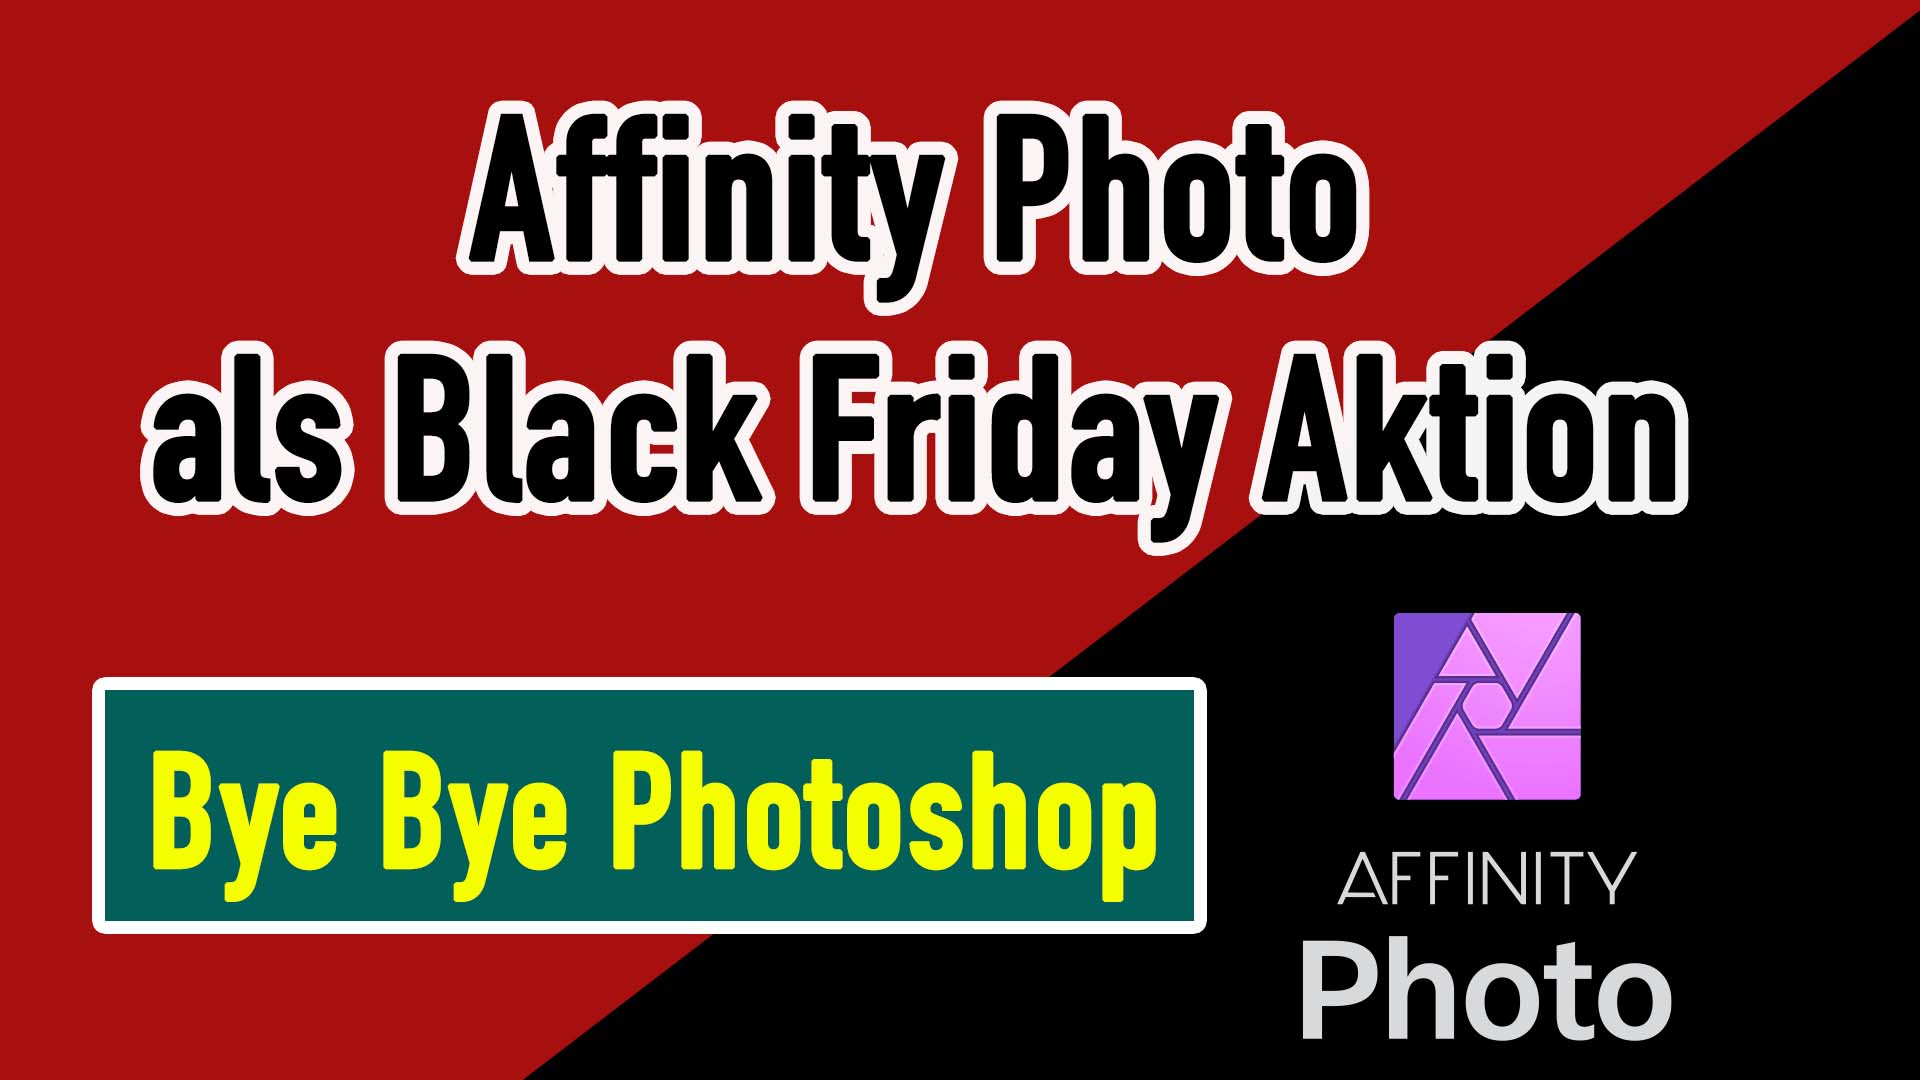 Der Photoshop Killer – Affinity als Black Friday Aktion 2021